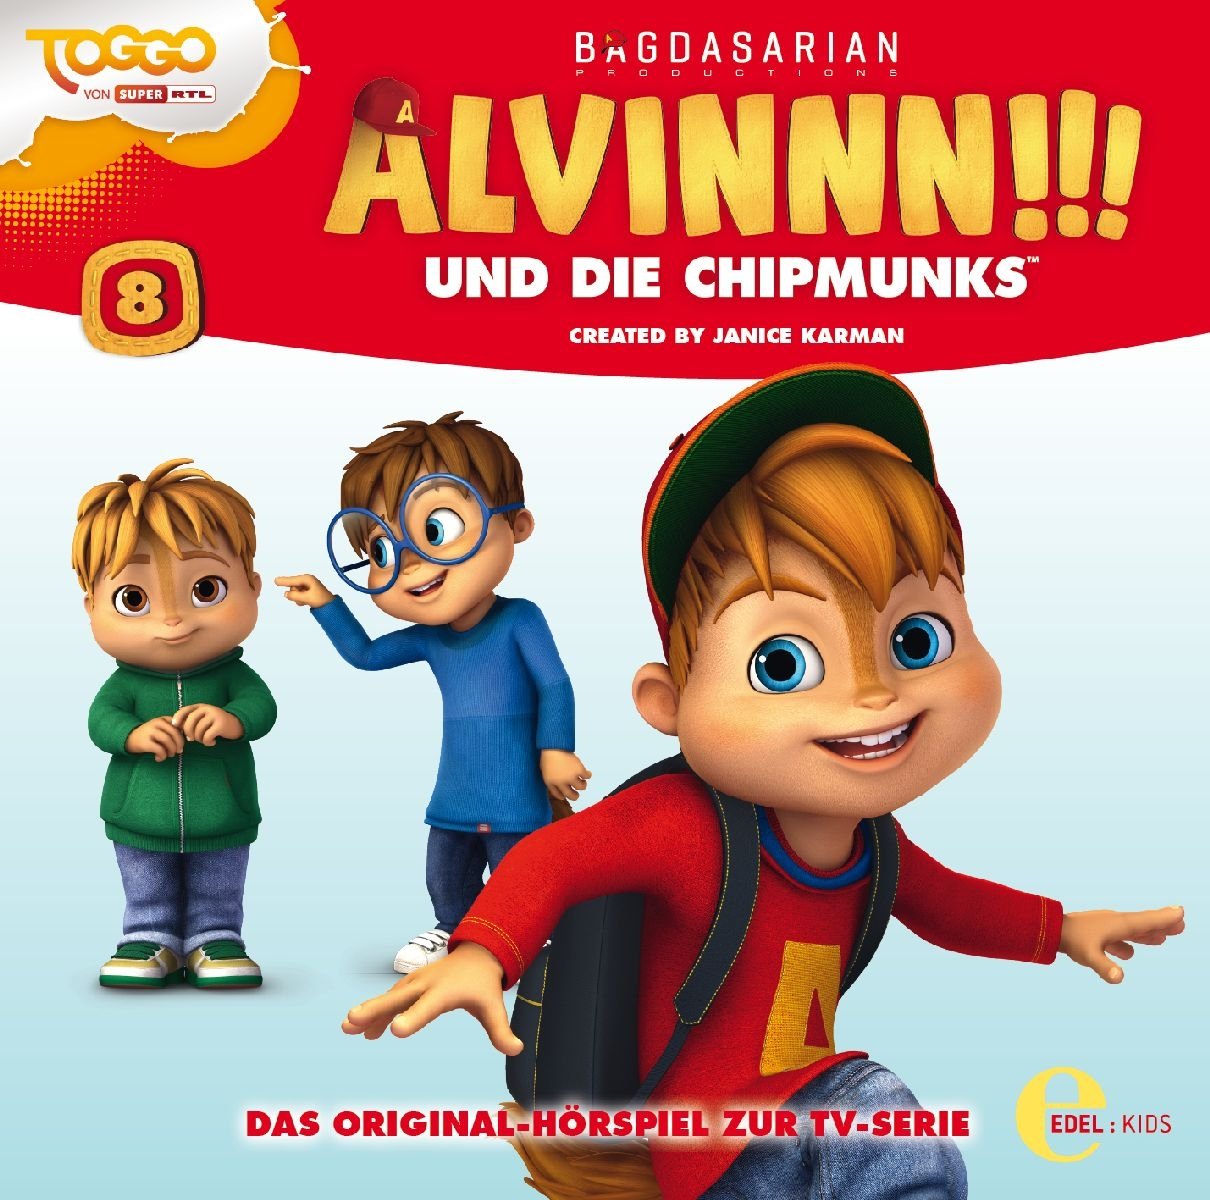 Alvinnn!!! und die Chipmunks - Superhelden - Das Original-Hörspiel zur TV-Serie, Folge 8